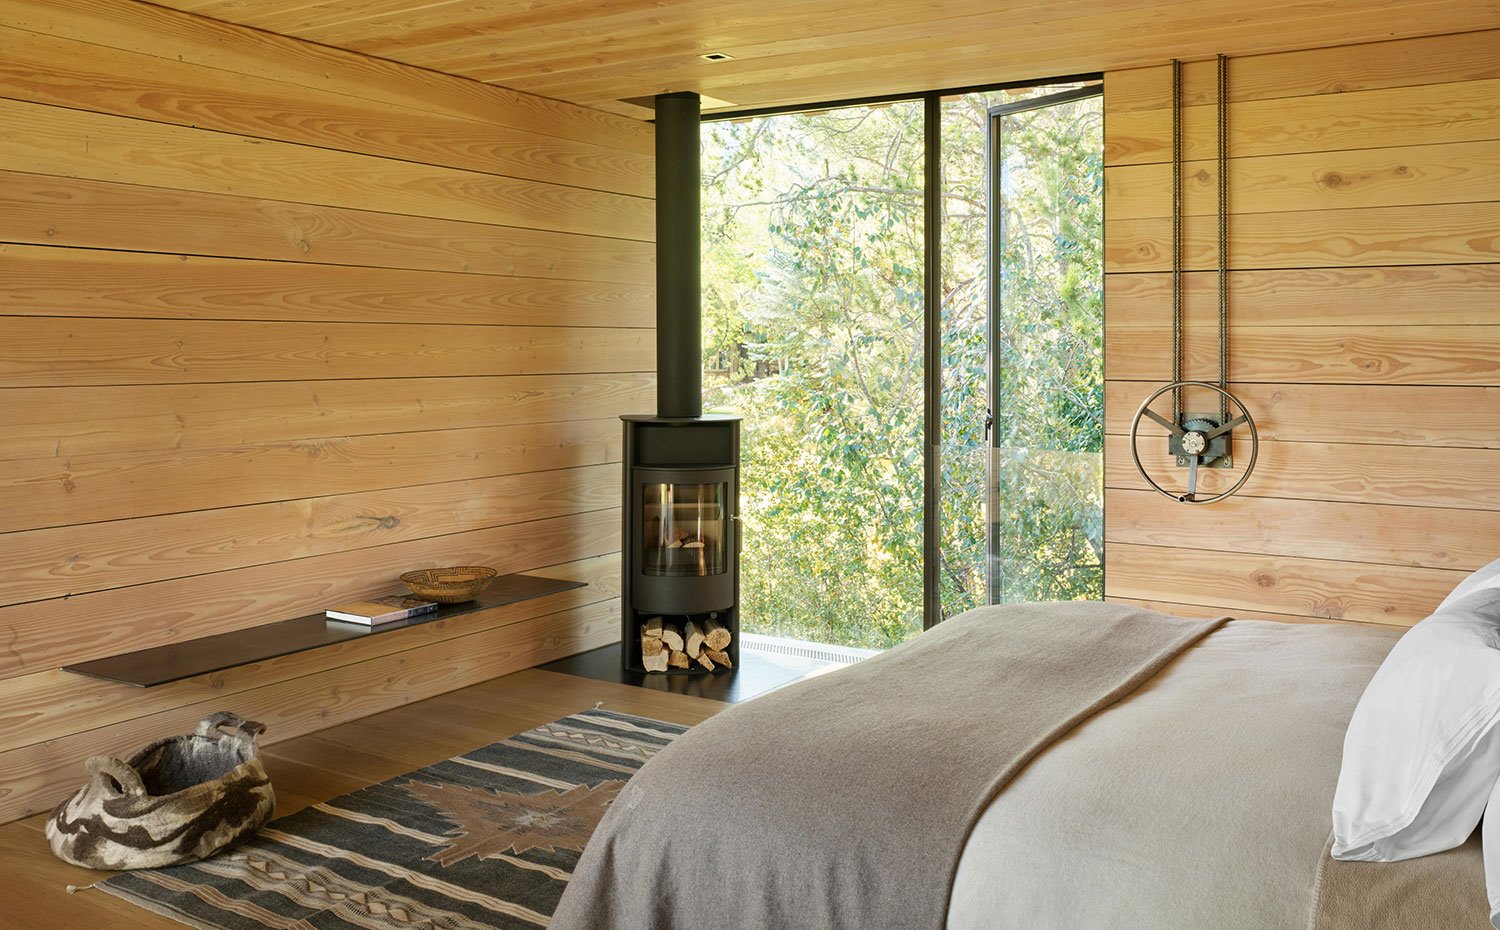 Dormitorio con chimenea en esquina junto a apertura a zona boscosa, paredes de madera con banco suspendido en acero